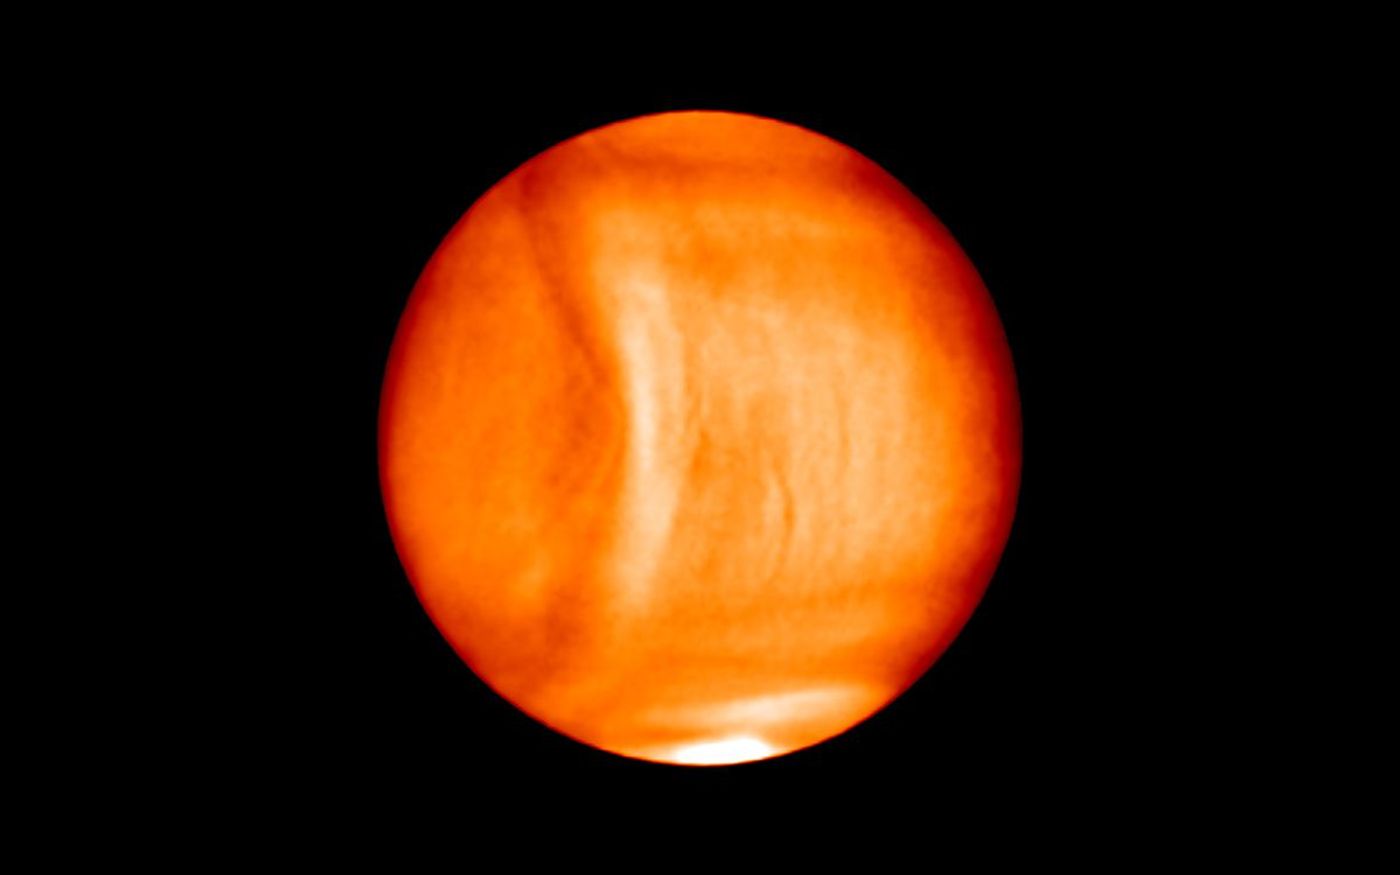 Bulging gravity wave seen on Venus